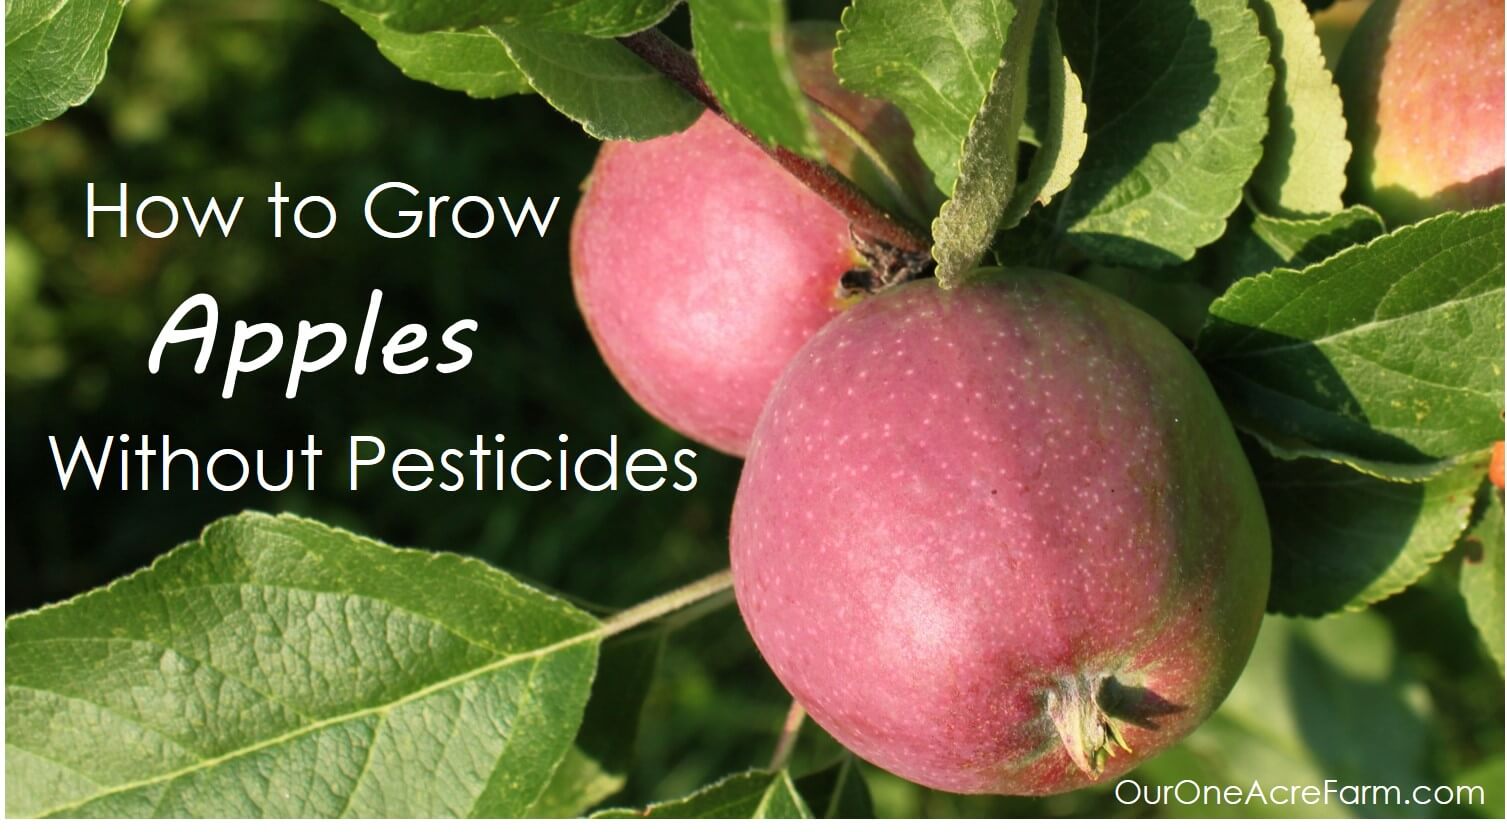 Wie kann ich meine Obstbäume behandeln, ohne Pestizide zu verwenden?